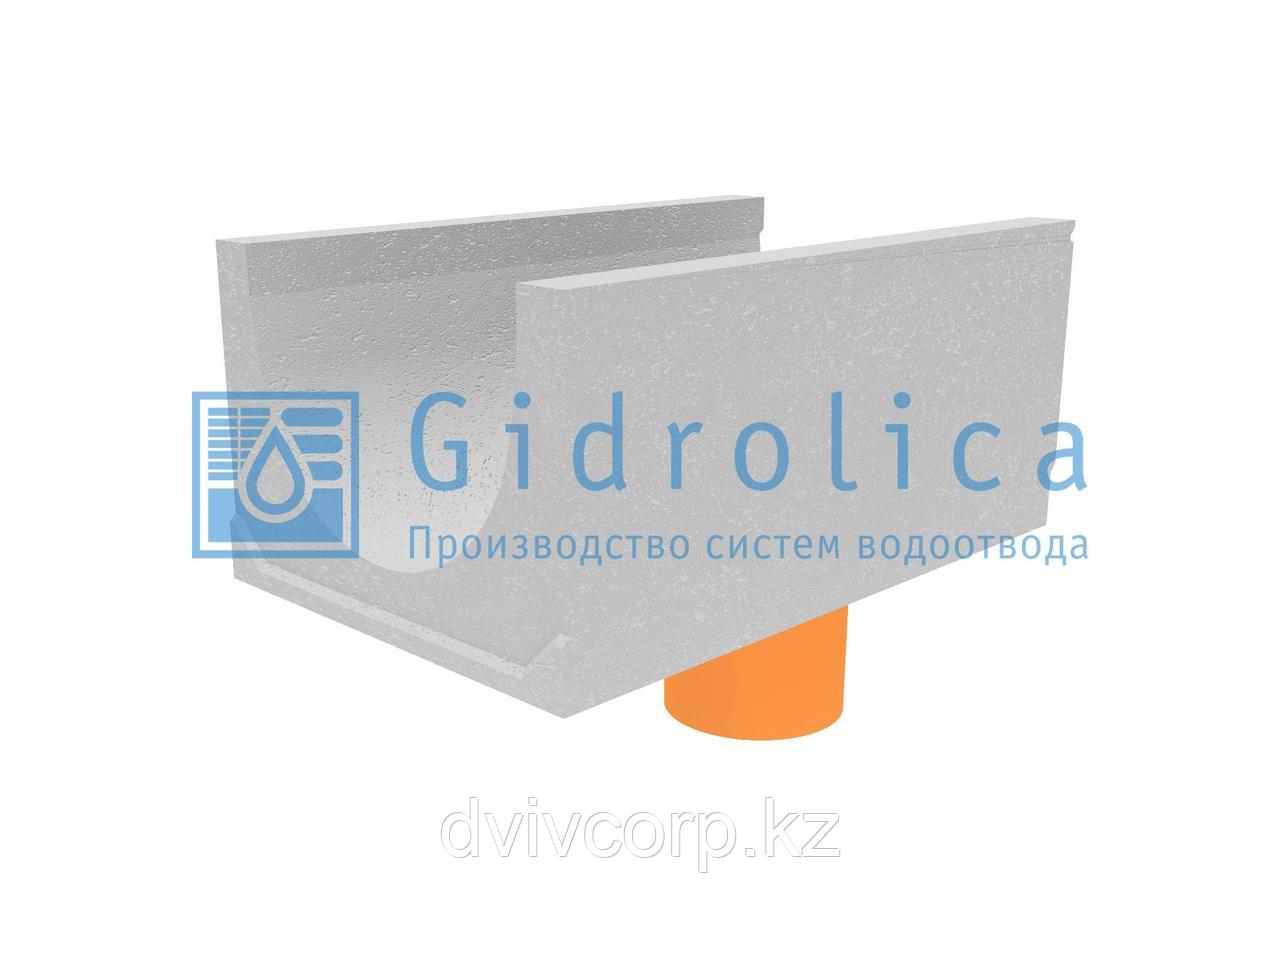 Лоток водоотводный бетонный коробчатый (СО-500мм), с водосливом КUв 100.65(50).45(36) - BGU-XL, № 0